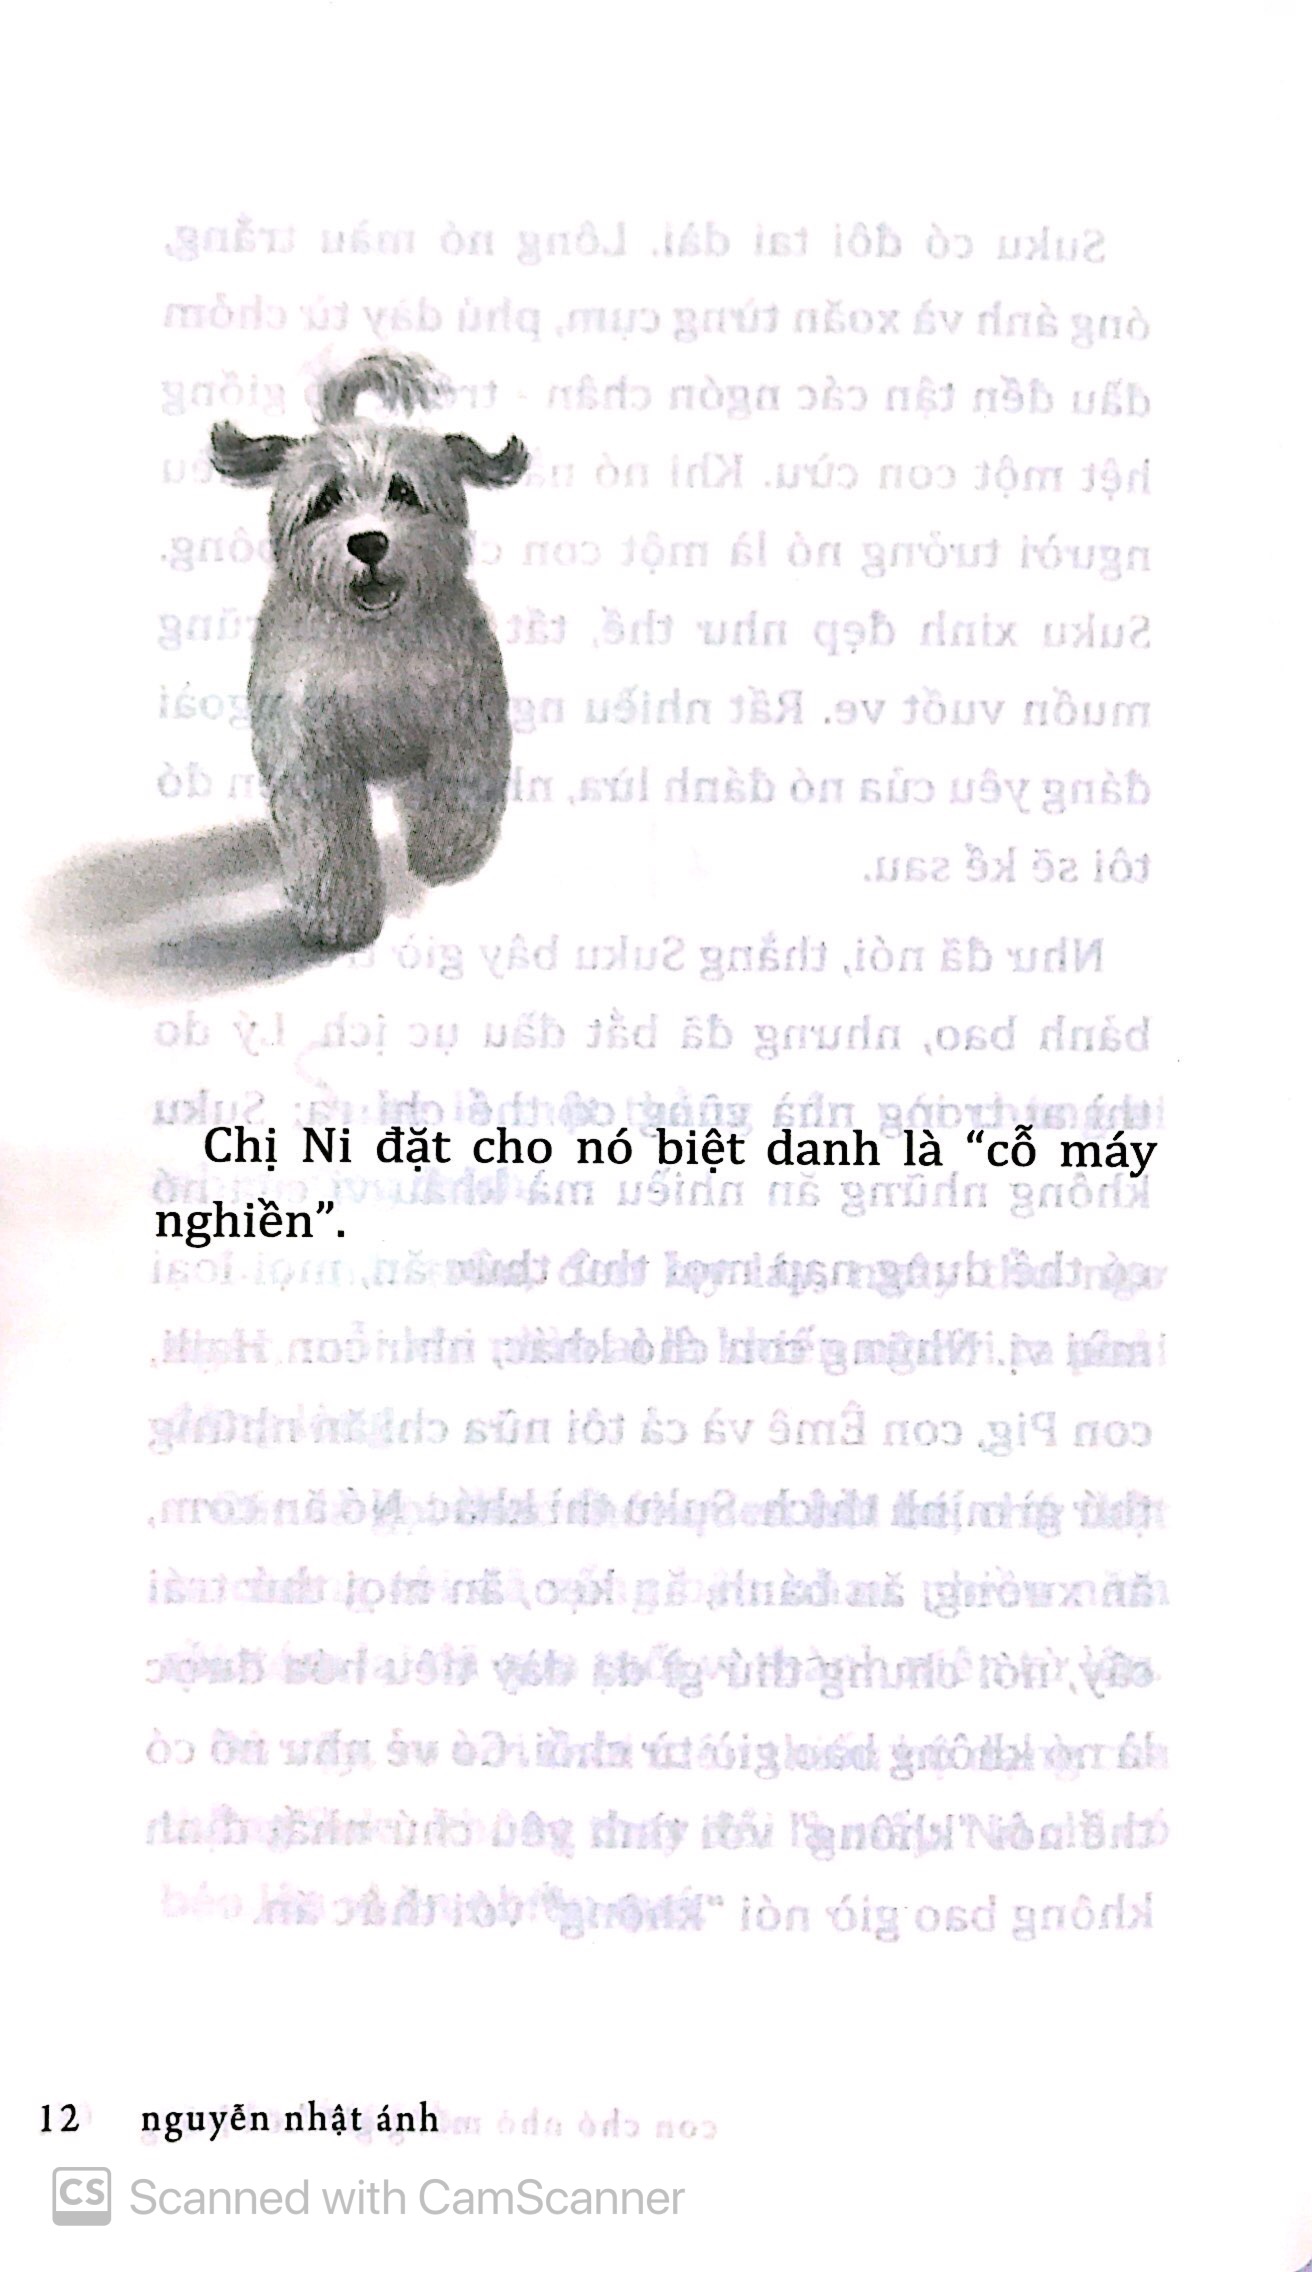 Con Chó Nhỏ Mang Giỏ Hoa Hồng PDF